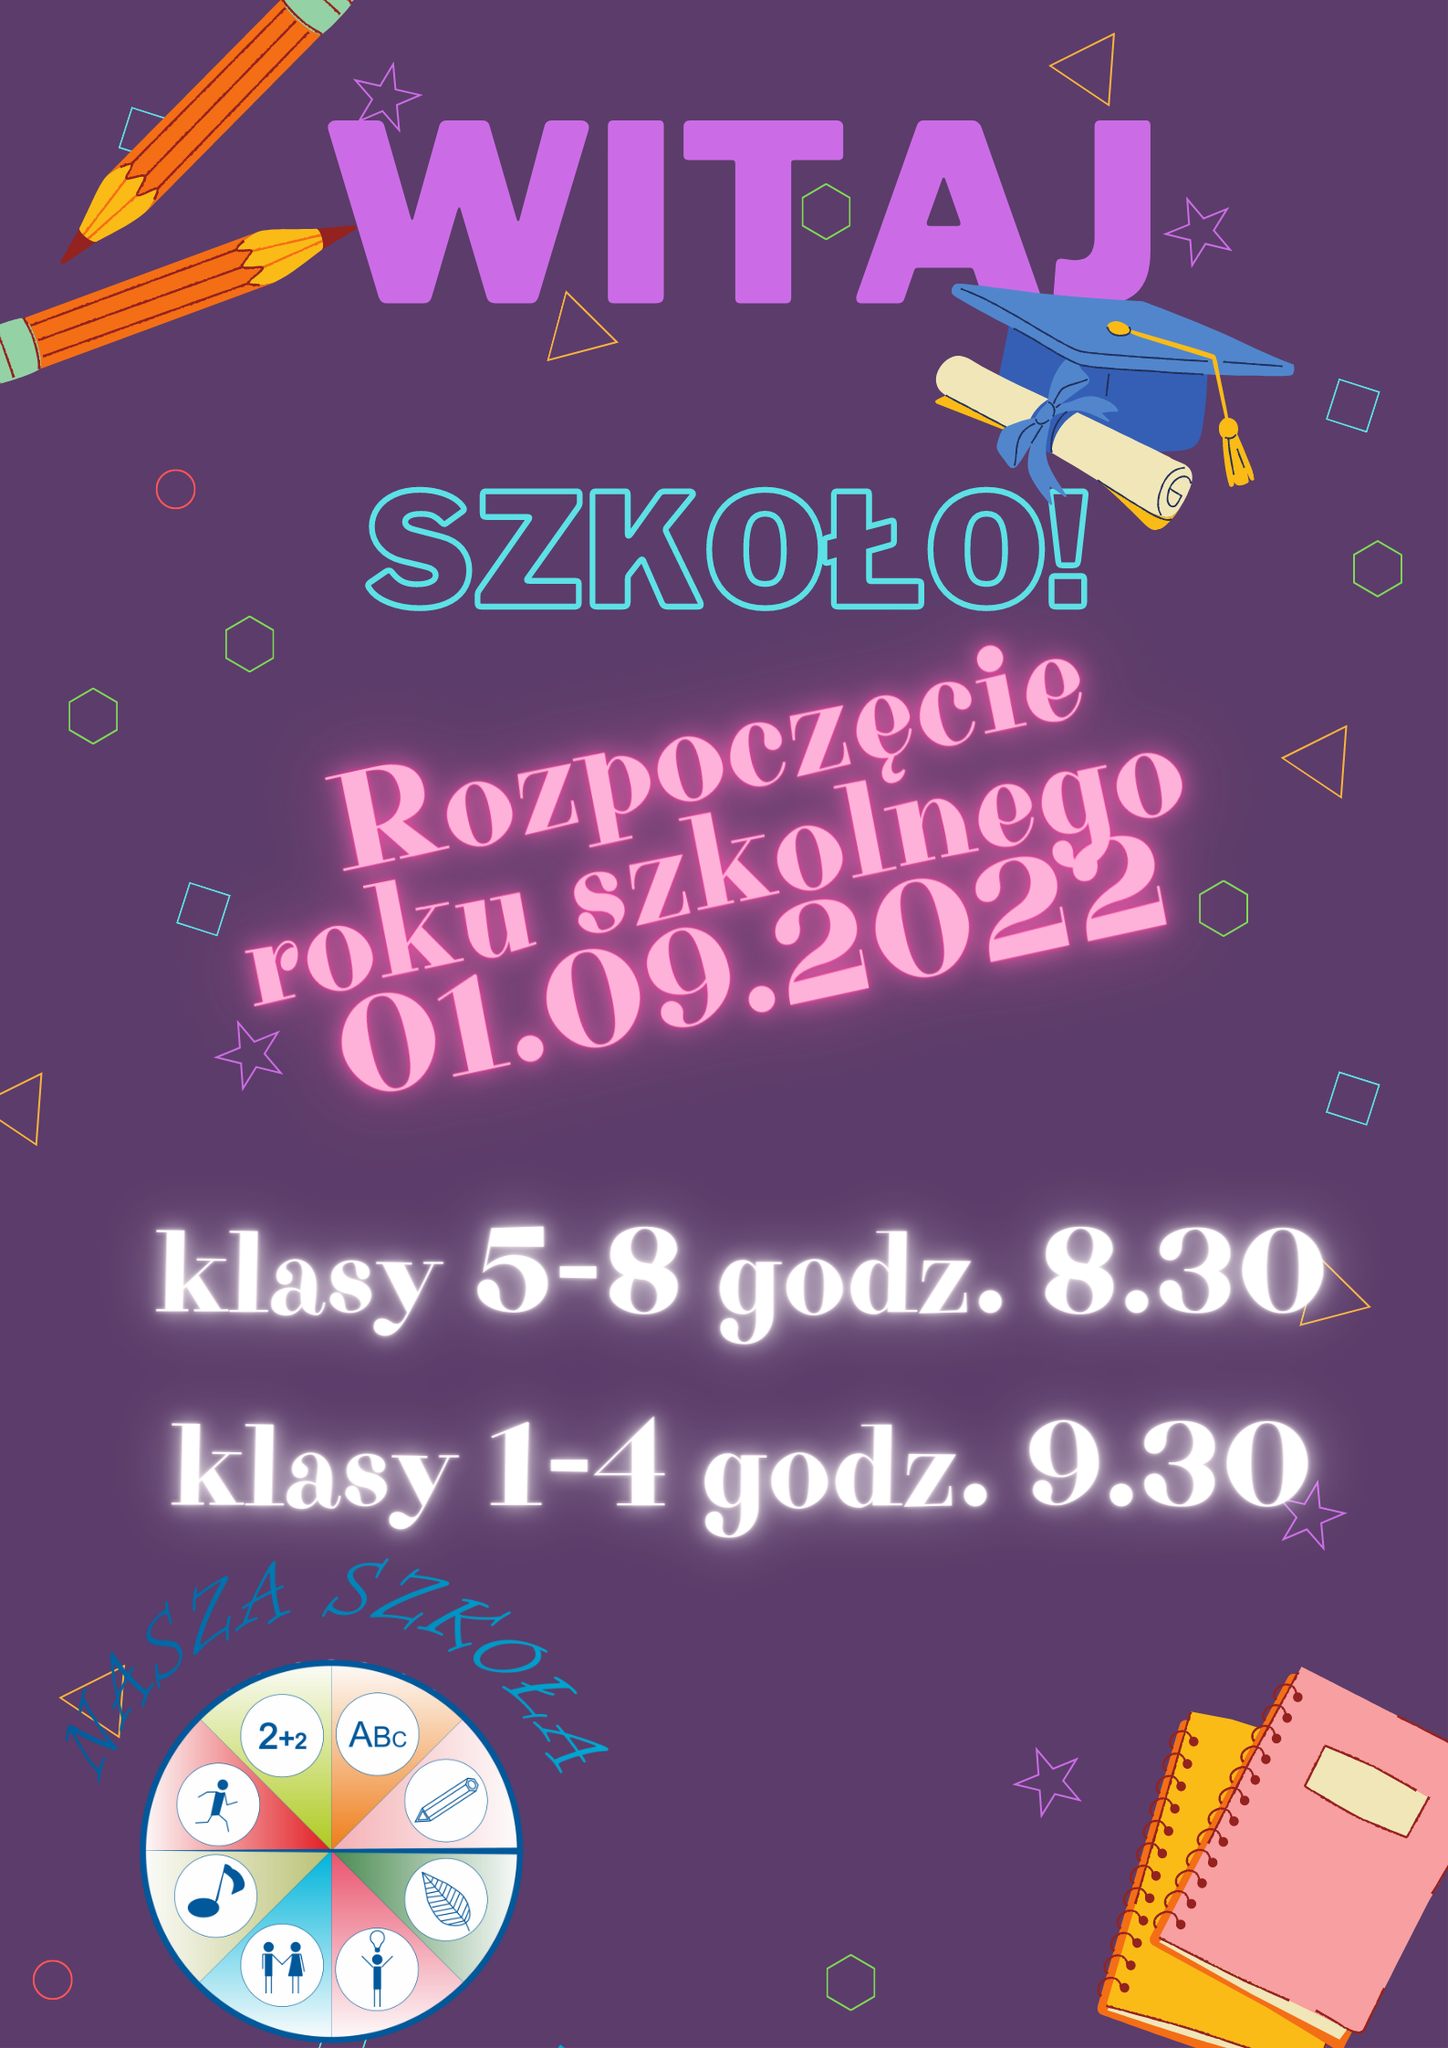 You are currently viewing Rozpoczęcie roku szkolnego 2022/23